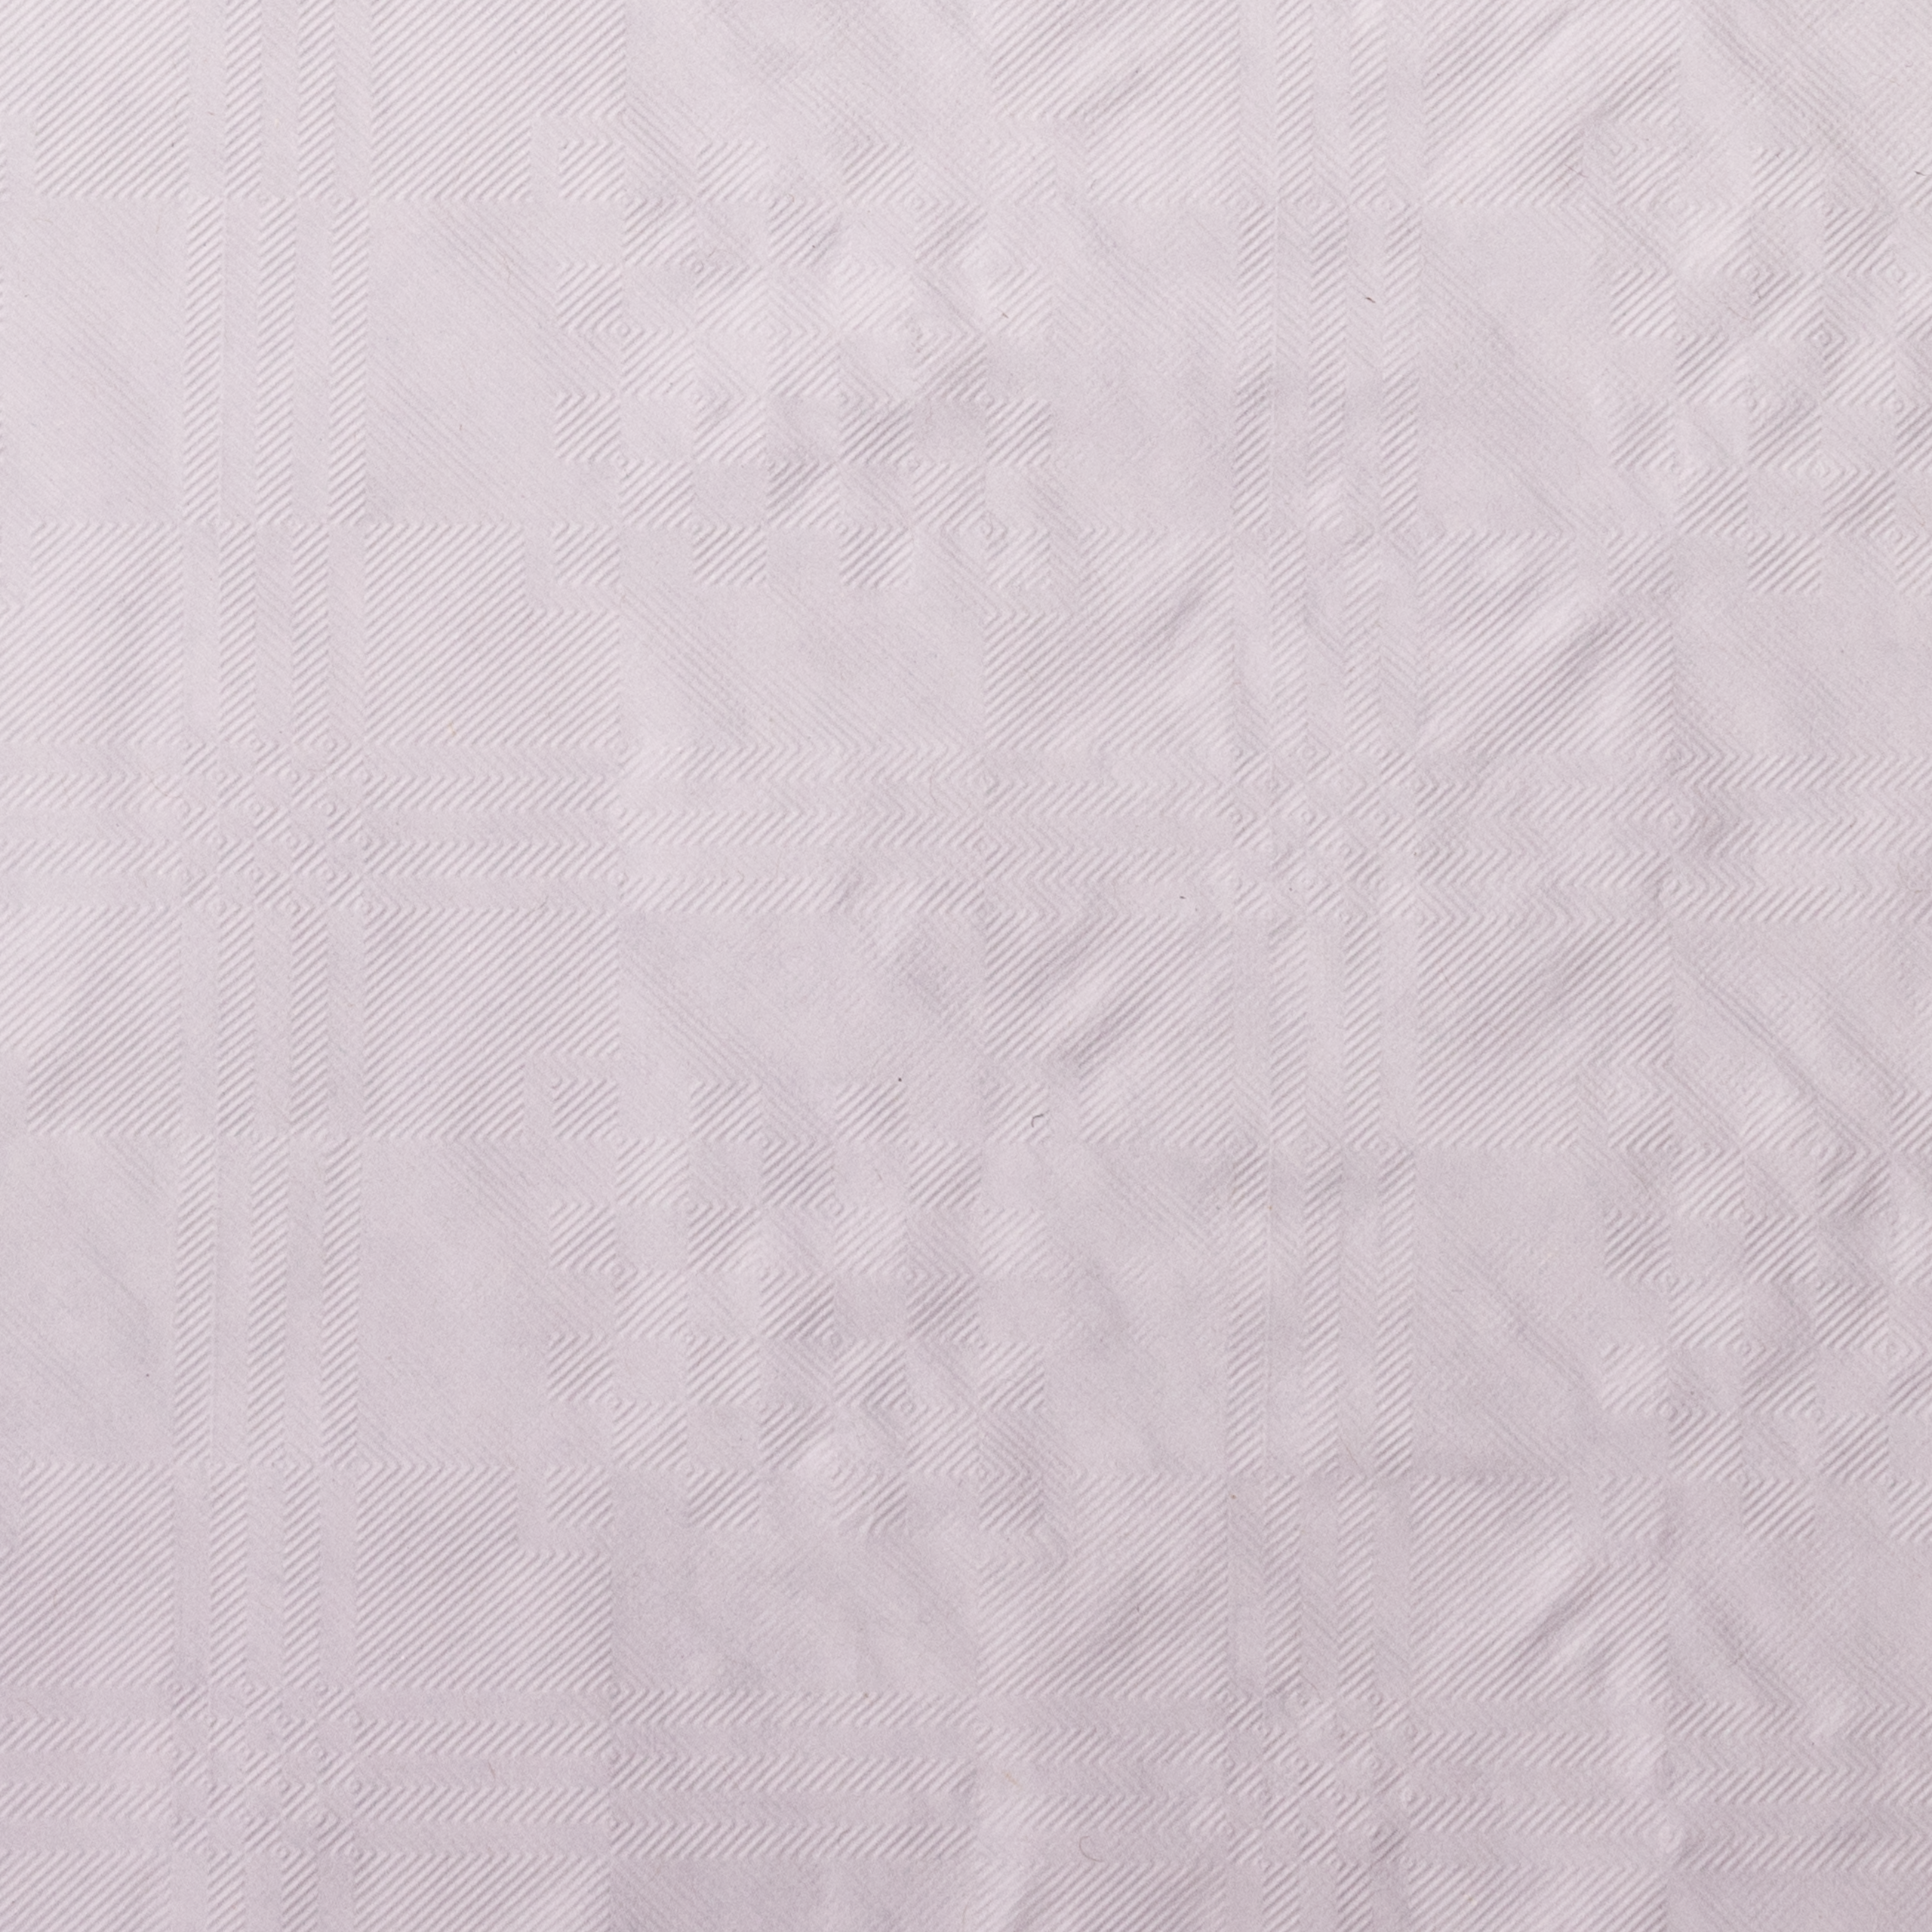 Tischtuchpapier weiß 50g/m², 1 x 25m